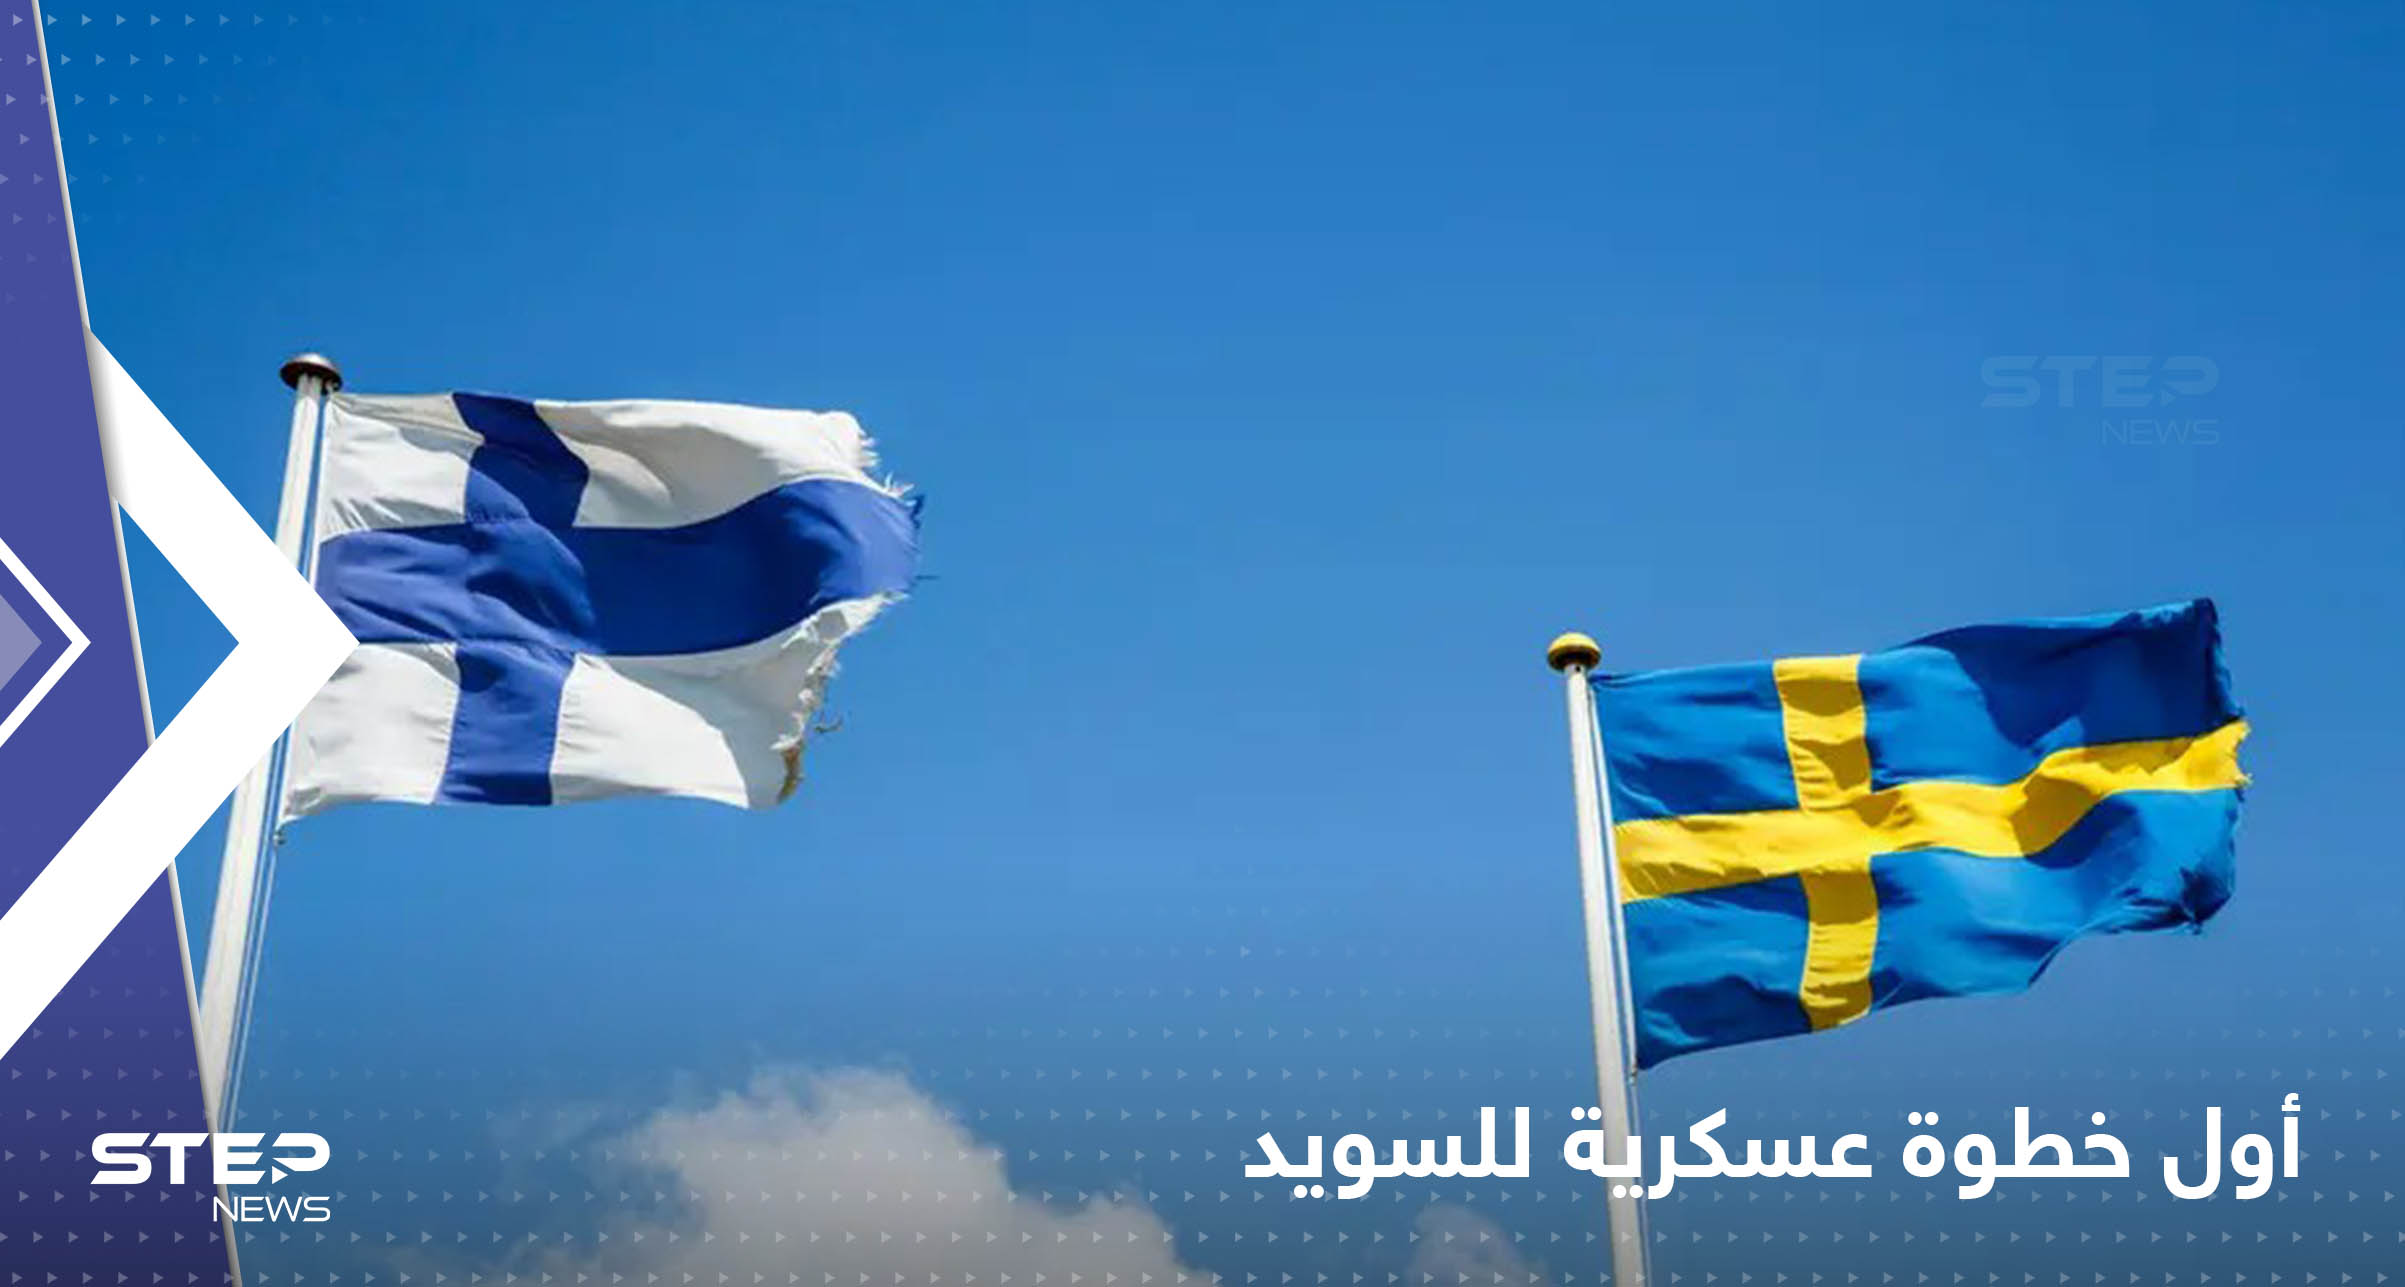 السويد تكشف عن أول خطوة عسكرية ستقوم بها حال انضمامها للناتو